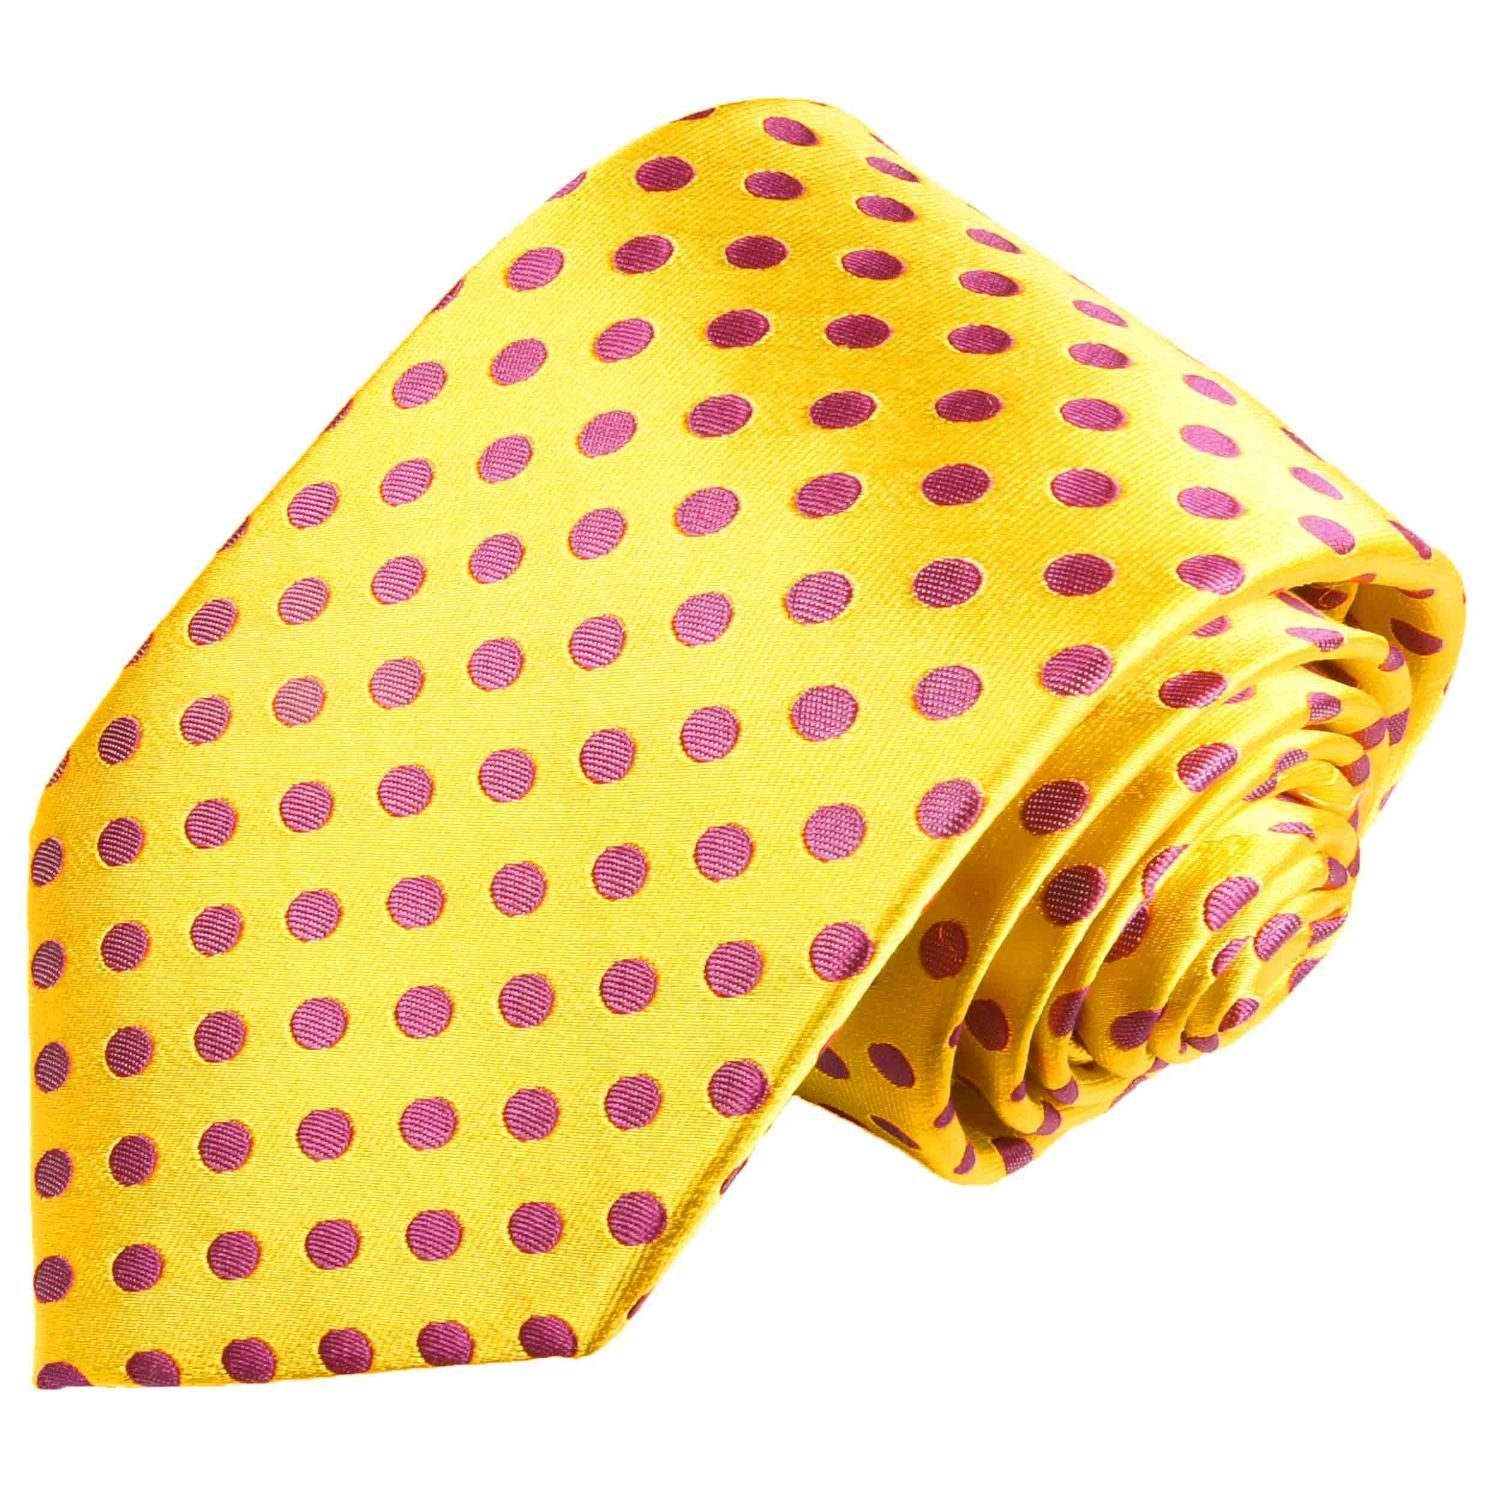 Paul Malone Krawatte Designer Seidenkrawatte Herren Schlips modern gepunktet 100% Seide Schmal (6cm), gelb pink 2003 | Breite Krawatten